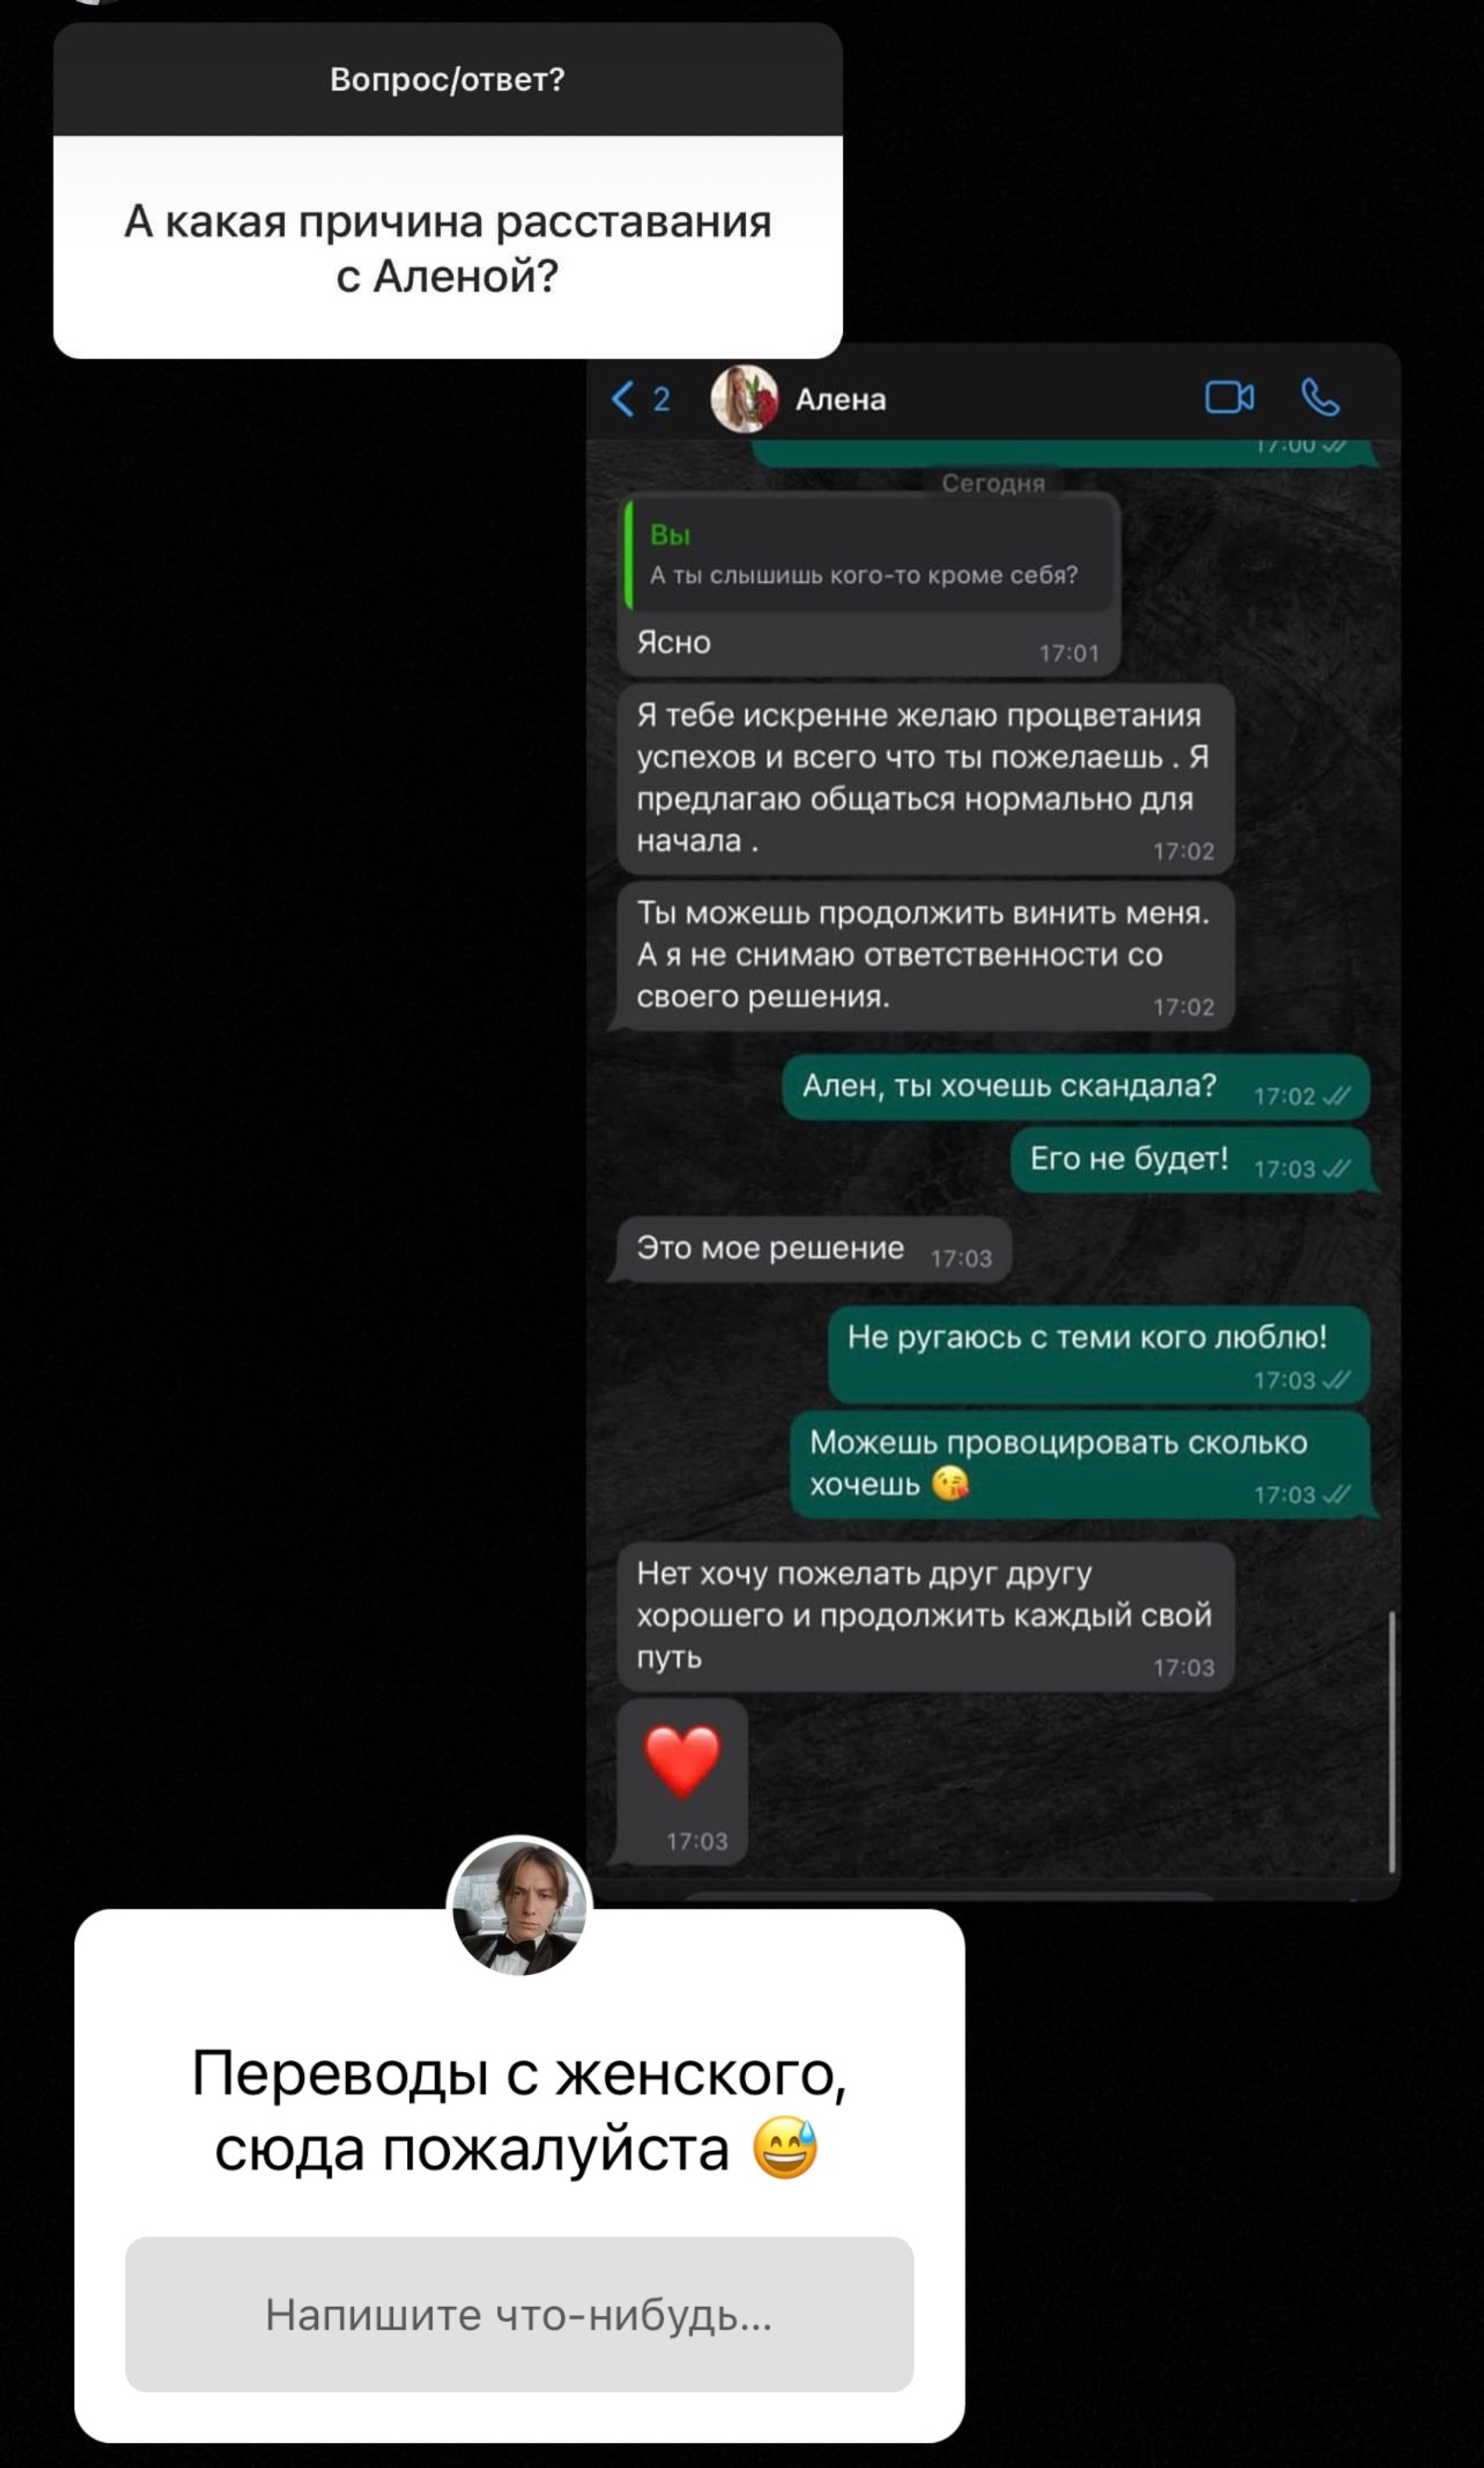 Скриншот переписки Жан-Поля с Аленой Ашмариной
Фото: Инстаграм (запрещен в РФ)